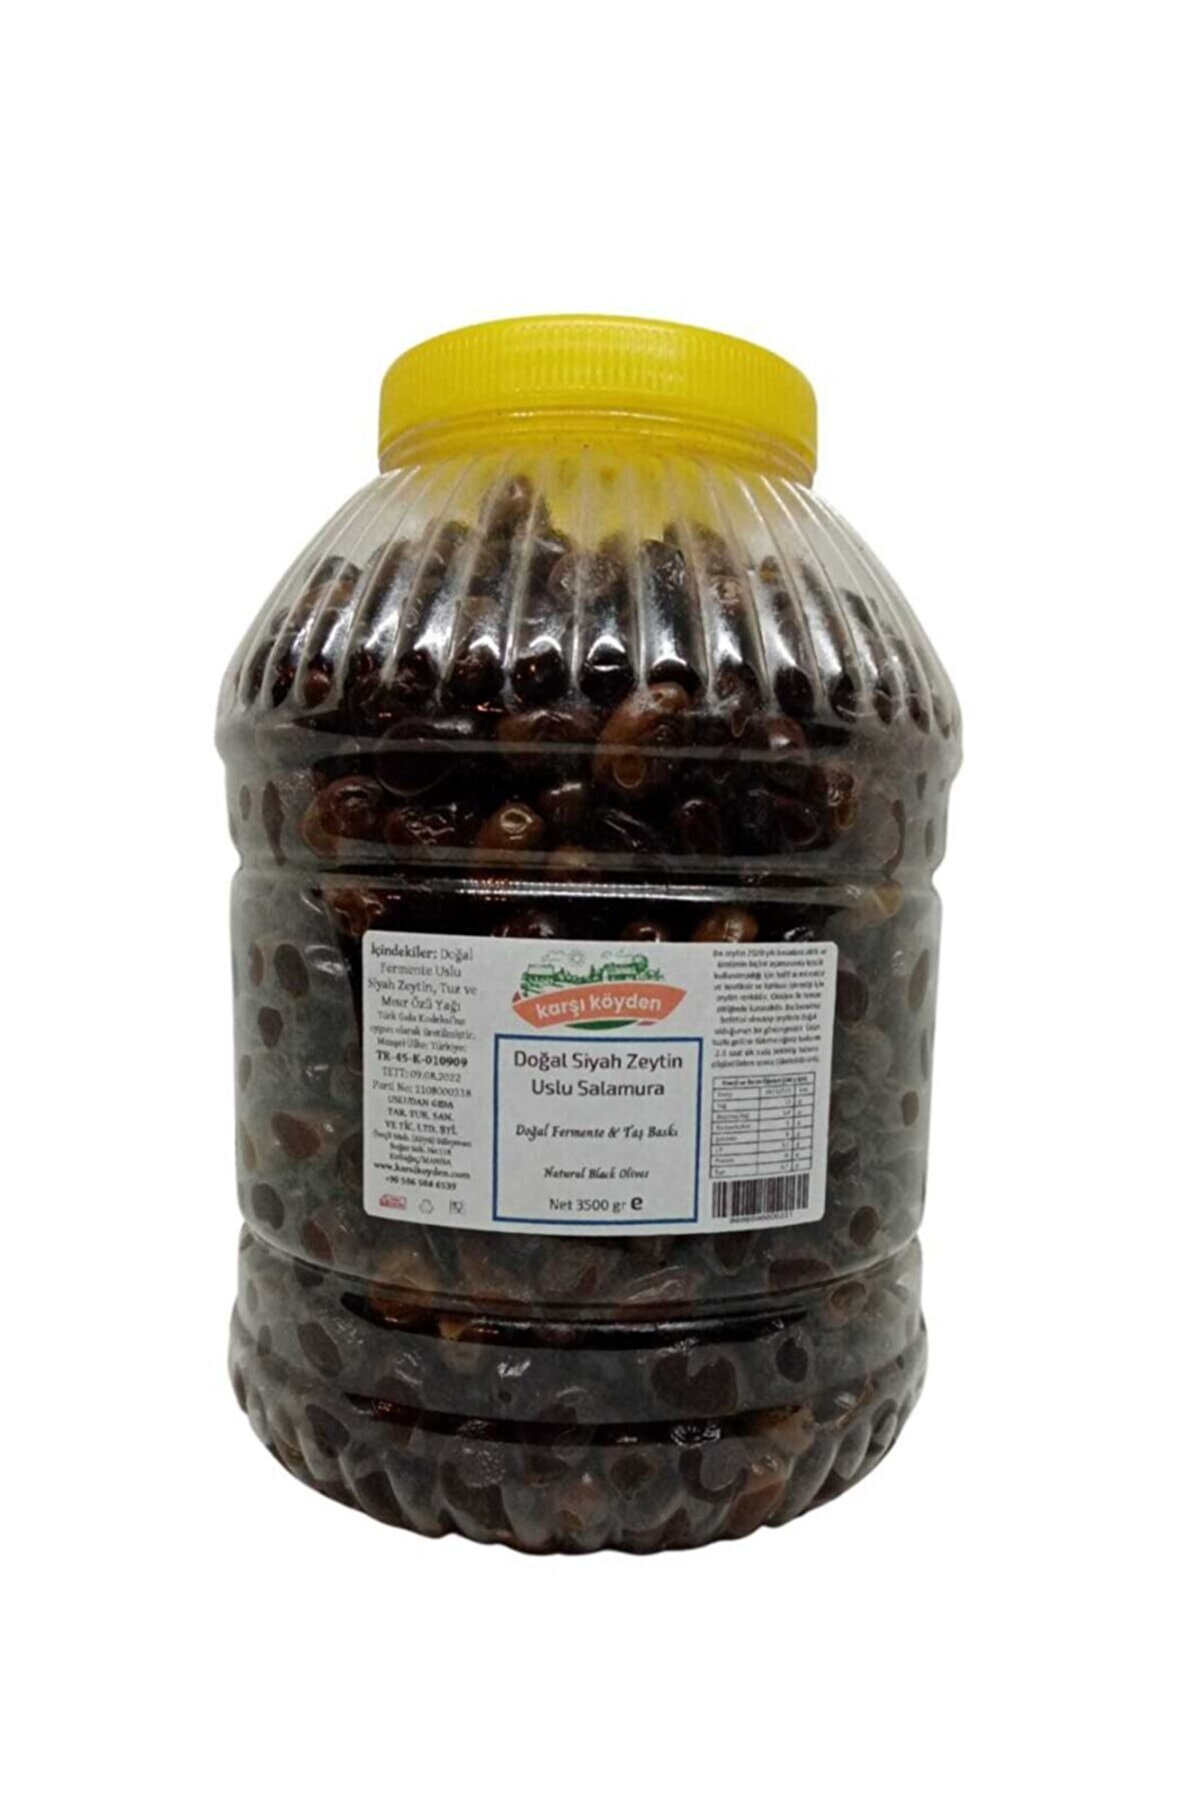 Karşı Köyden Taş Baskı Doğal Fermente Uslu Salamura Siyah Zeytin (3500GR - PET KAVANOZ)